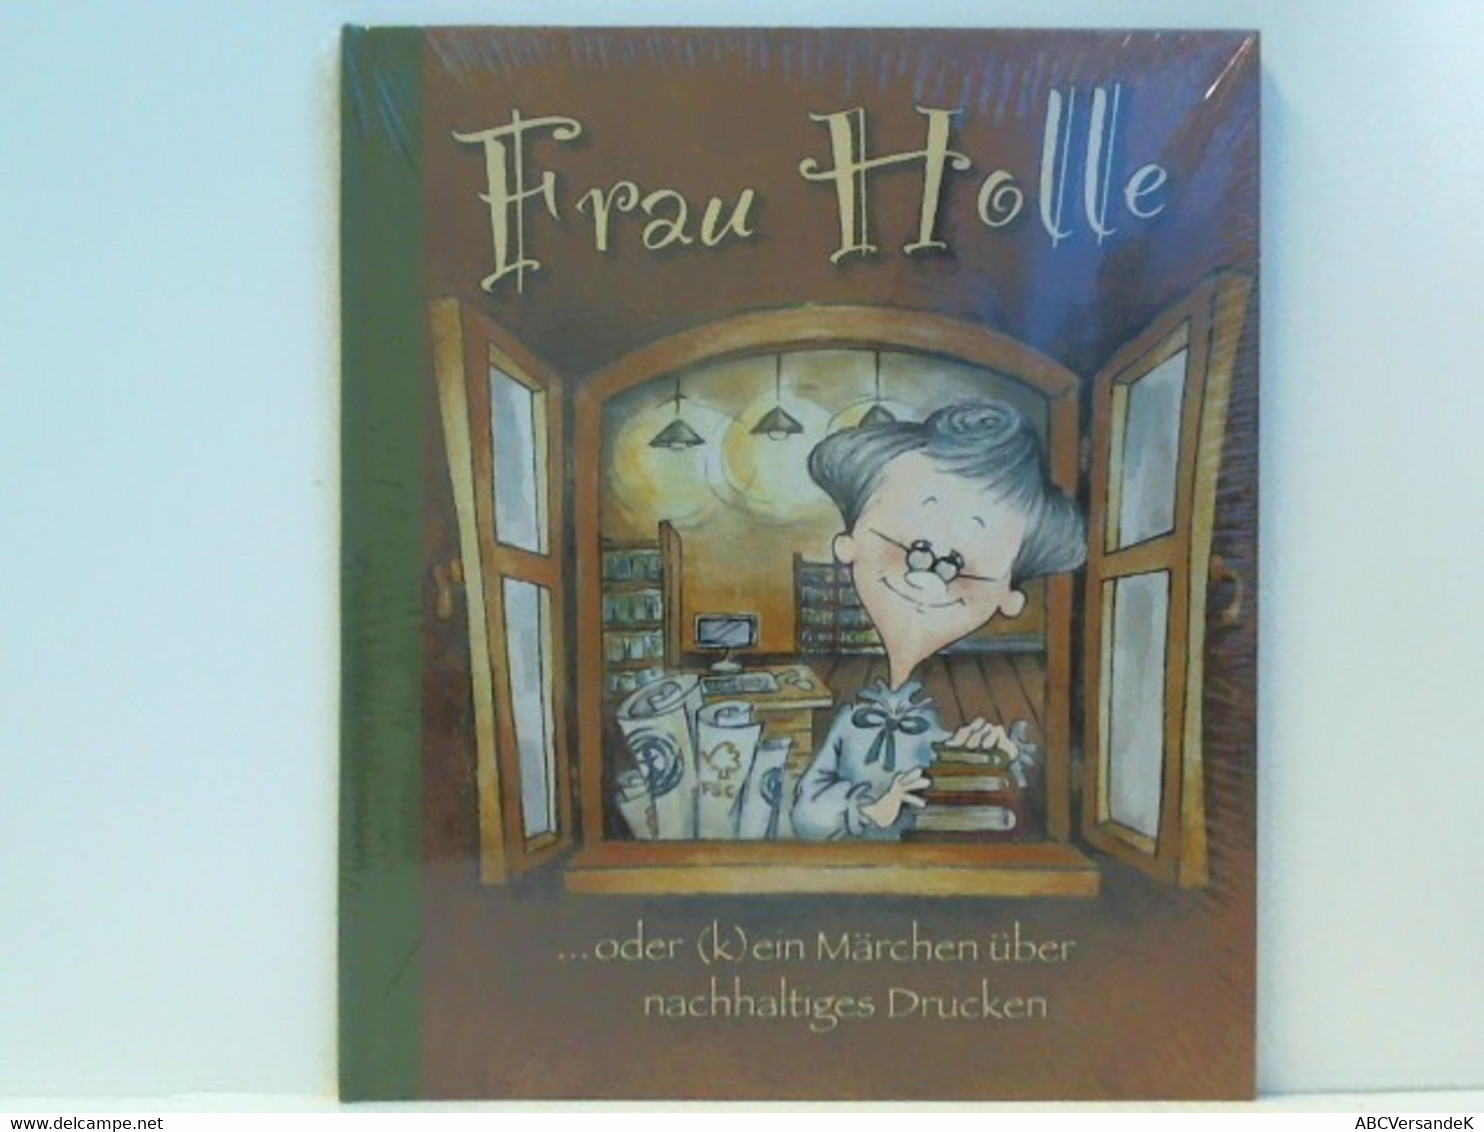 Frau Holle ....oder (k)ein Märchen über Nachhaltiges Drucken - Tales & Legends